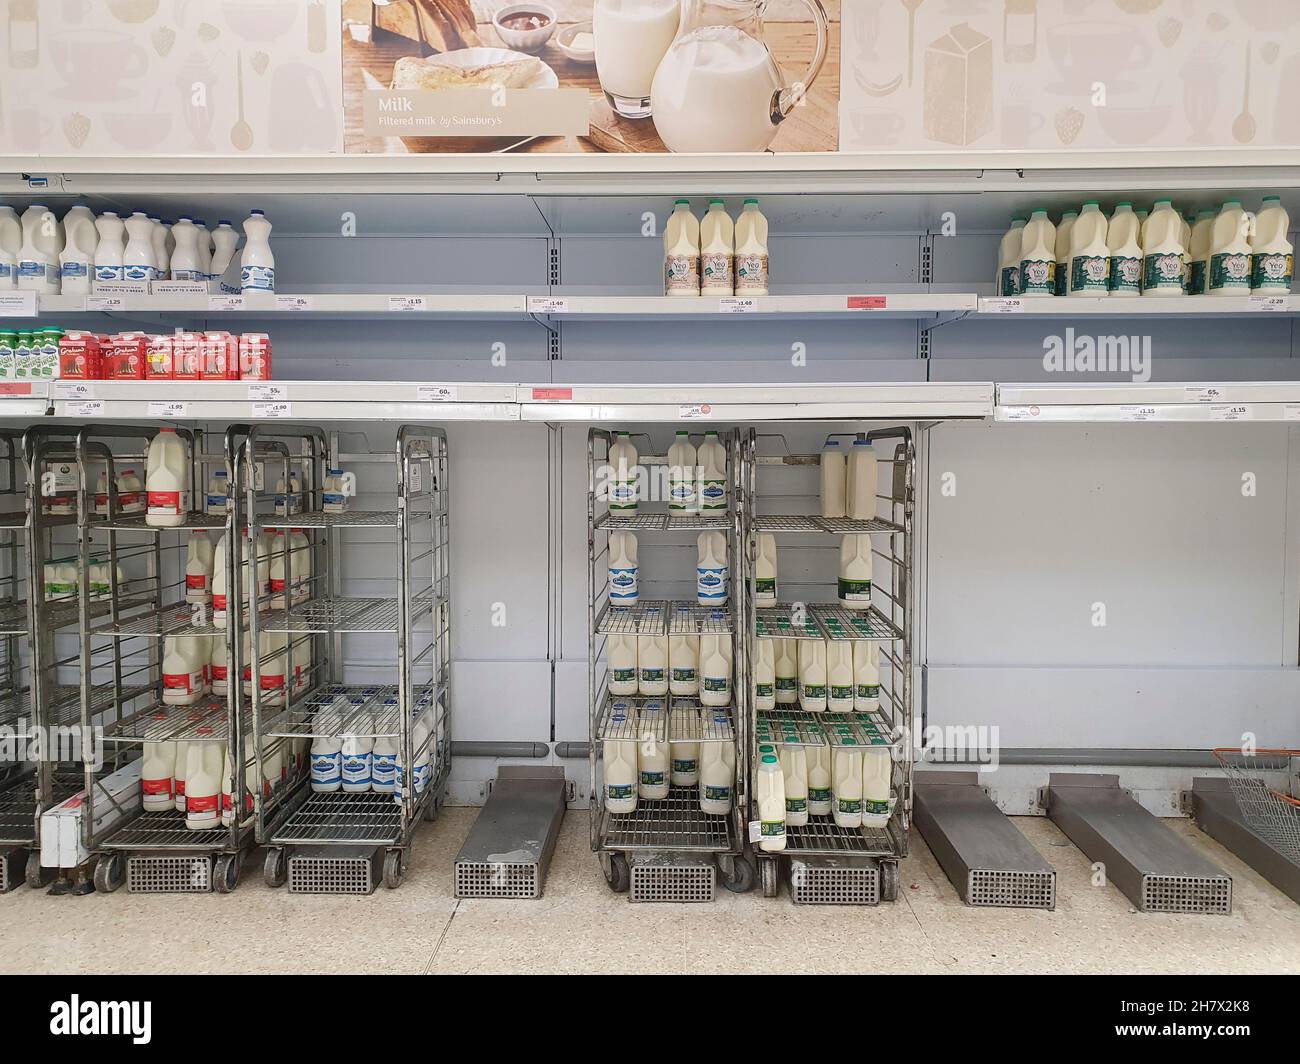 Londra, UK, 25 novembre 2021: Presso la filiale Clapham High Street del supermercato Sainsbury, le scaffalature vuote mostrano i problemi in corso nella distribuzione della catena di fornitura e nelle consegne. Anna Watson/Alamy Live News Foto Stock